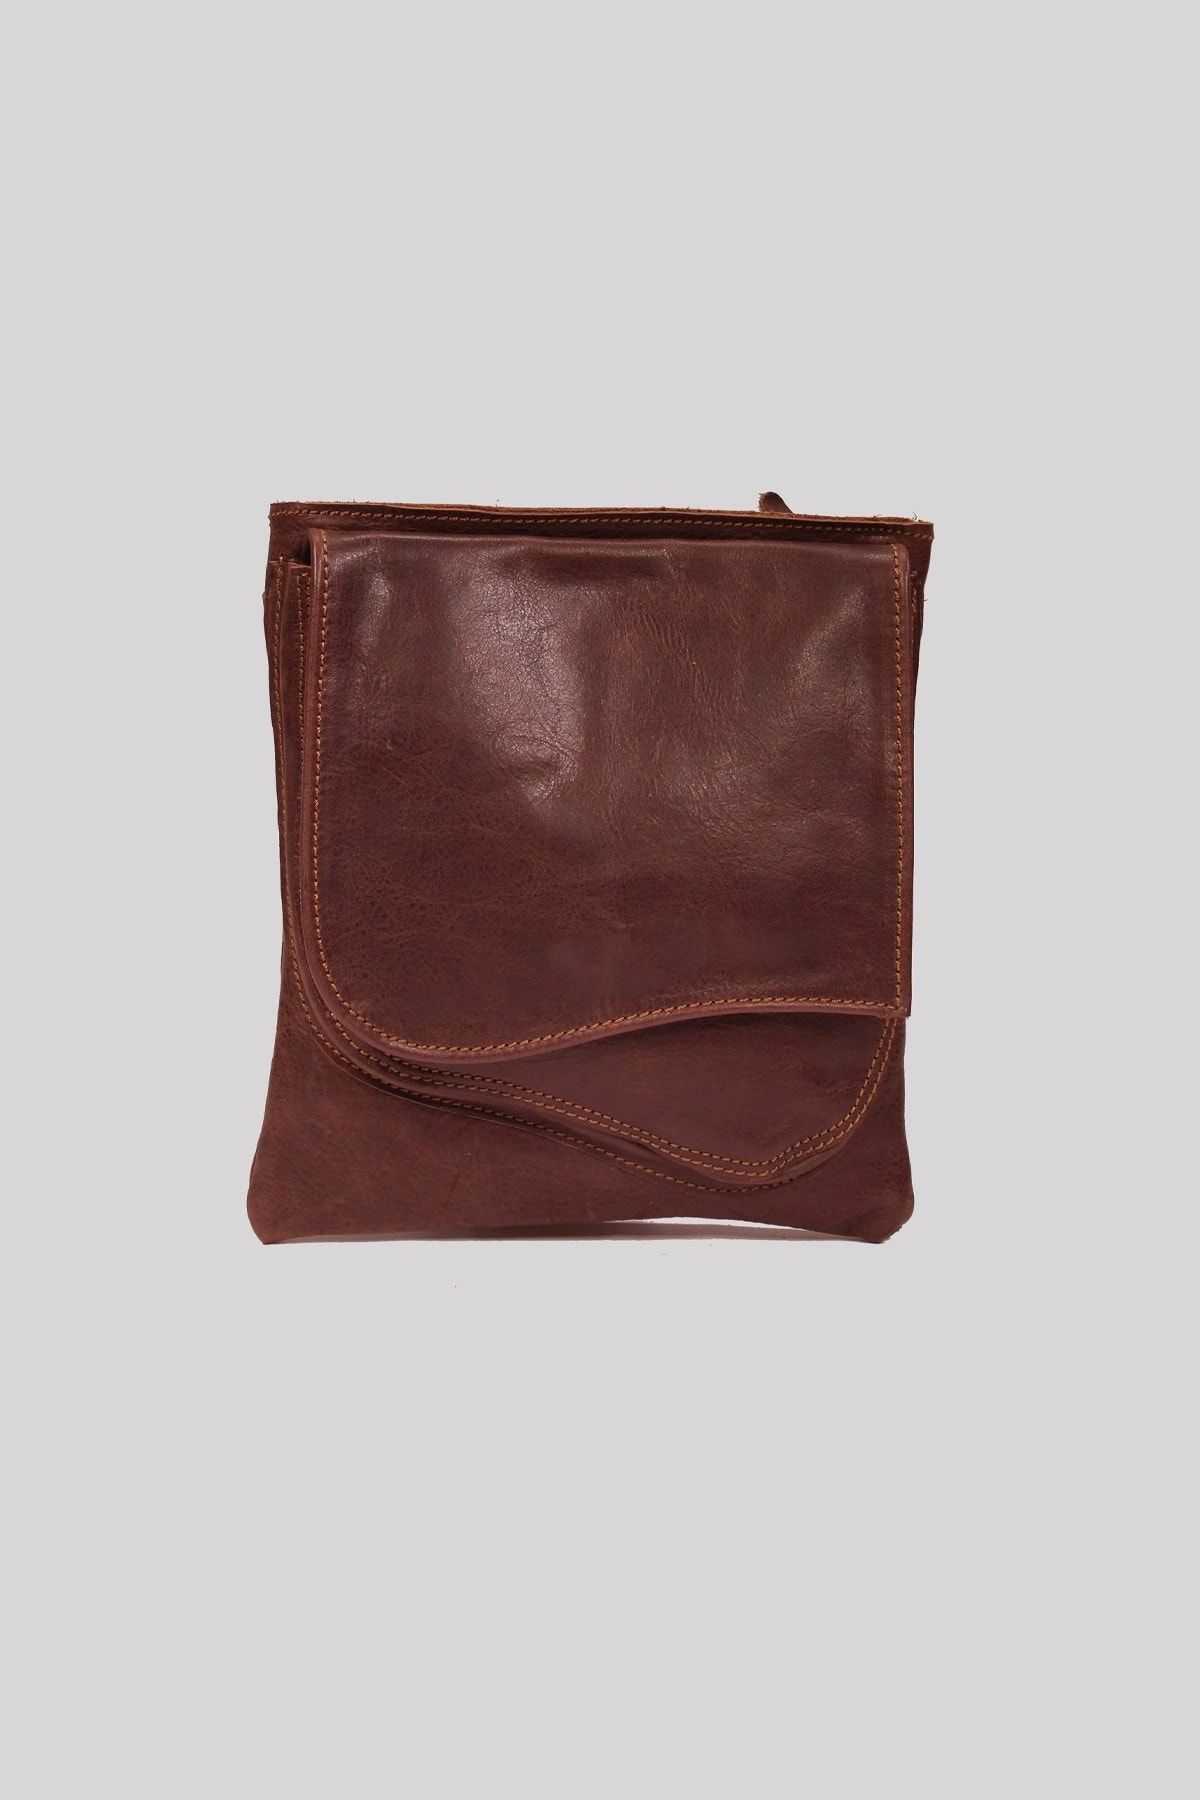 Galata Leather El Yapımı Deri Postacı Çantası - Edınburgh - Koyu Kahve